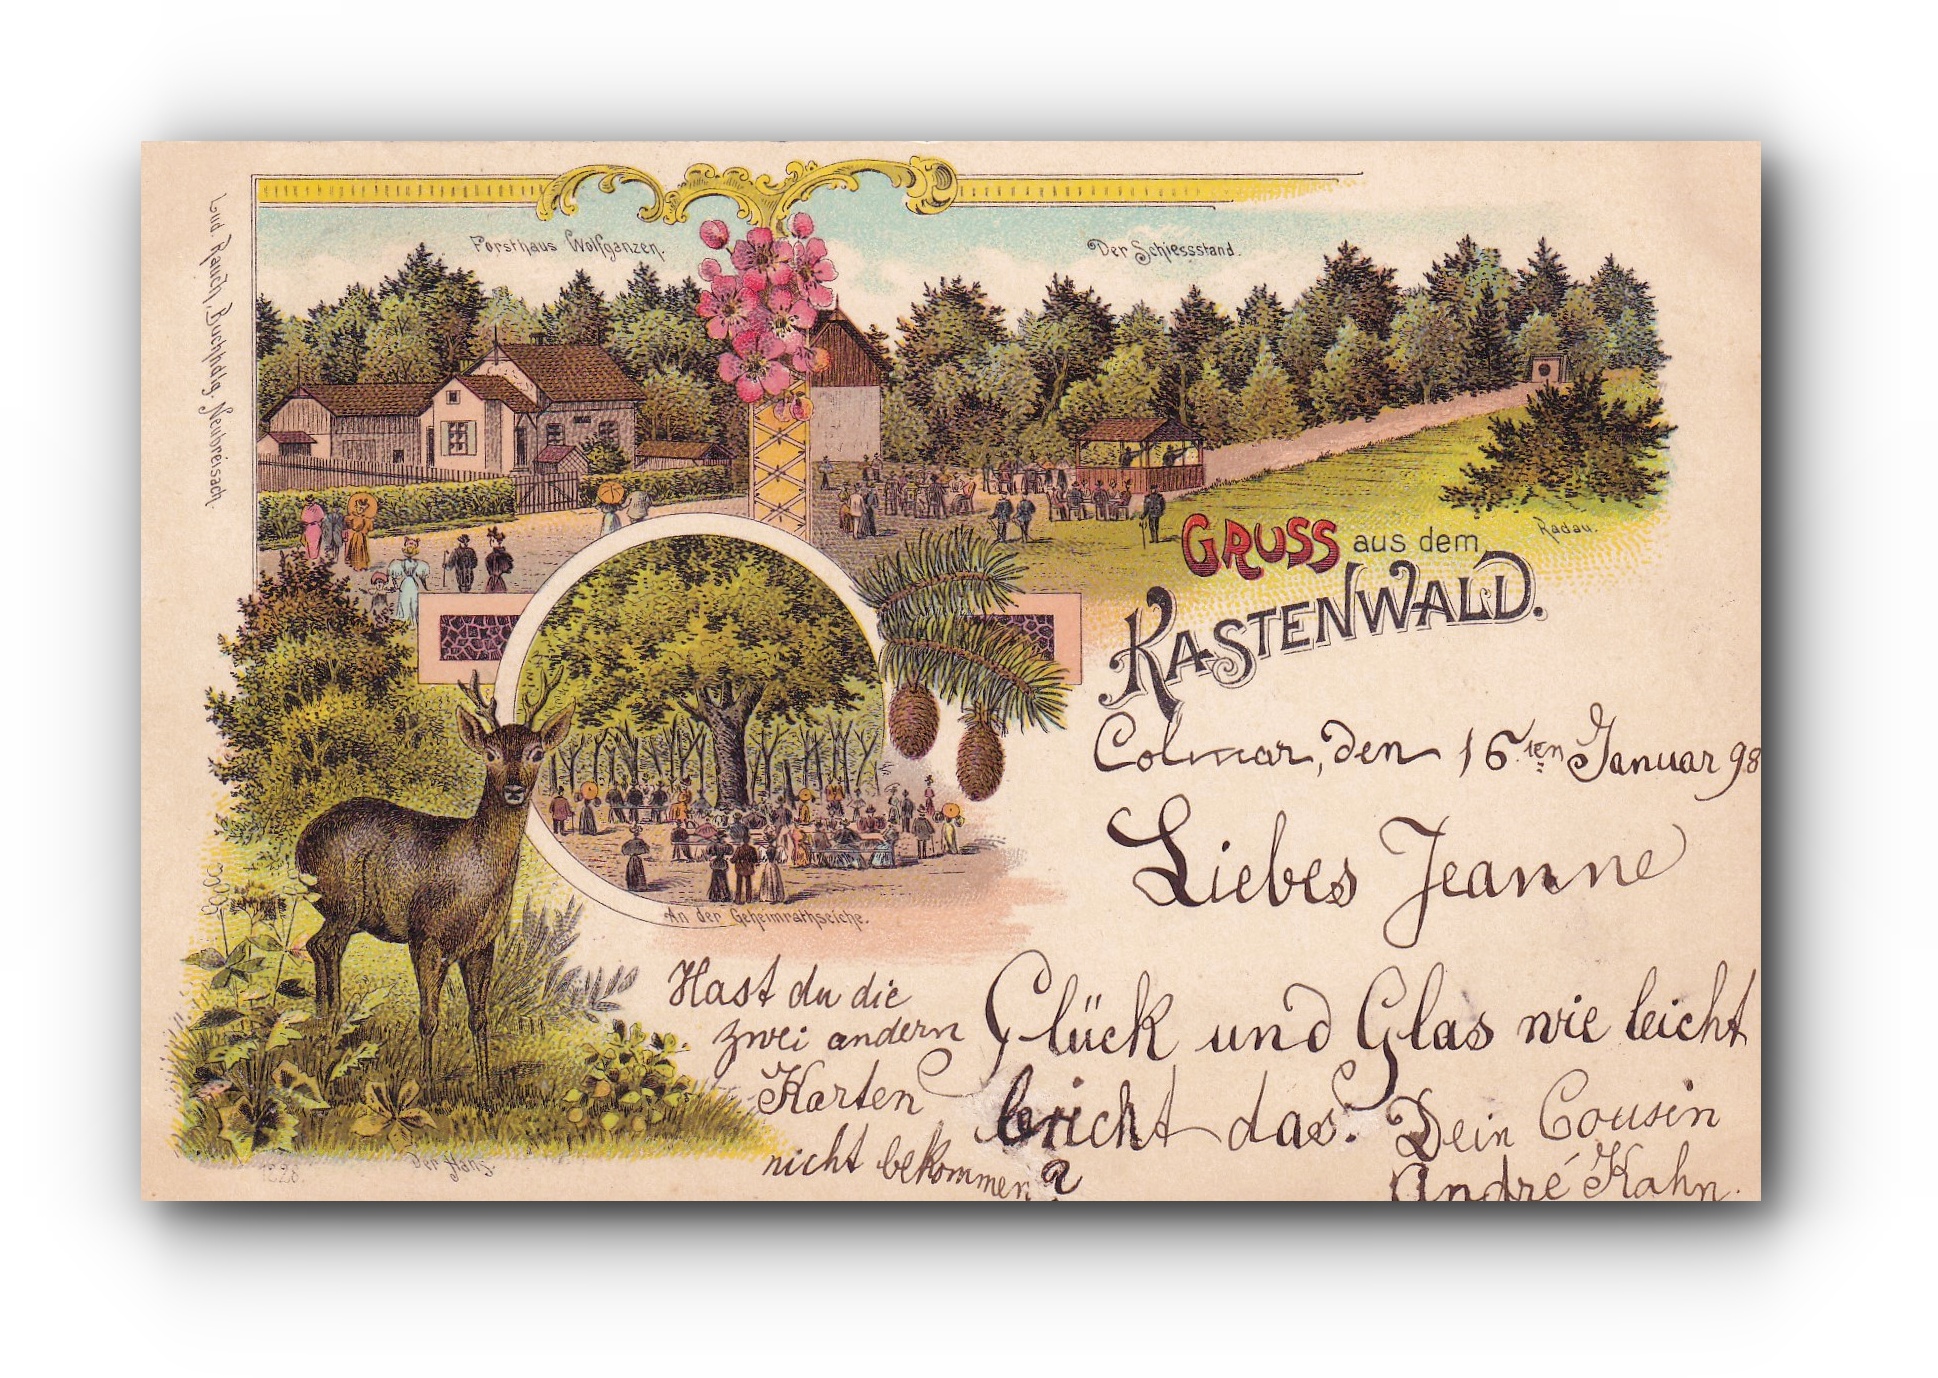 - Gruss aus dem Kastenwald - 16.01.1898 -